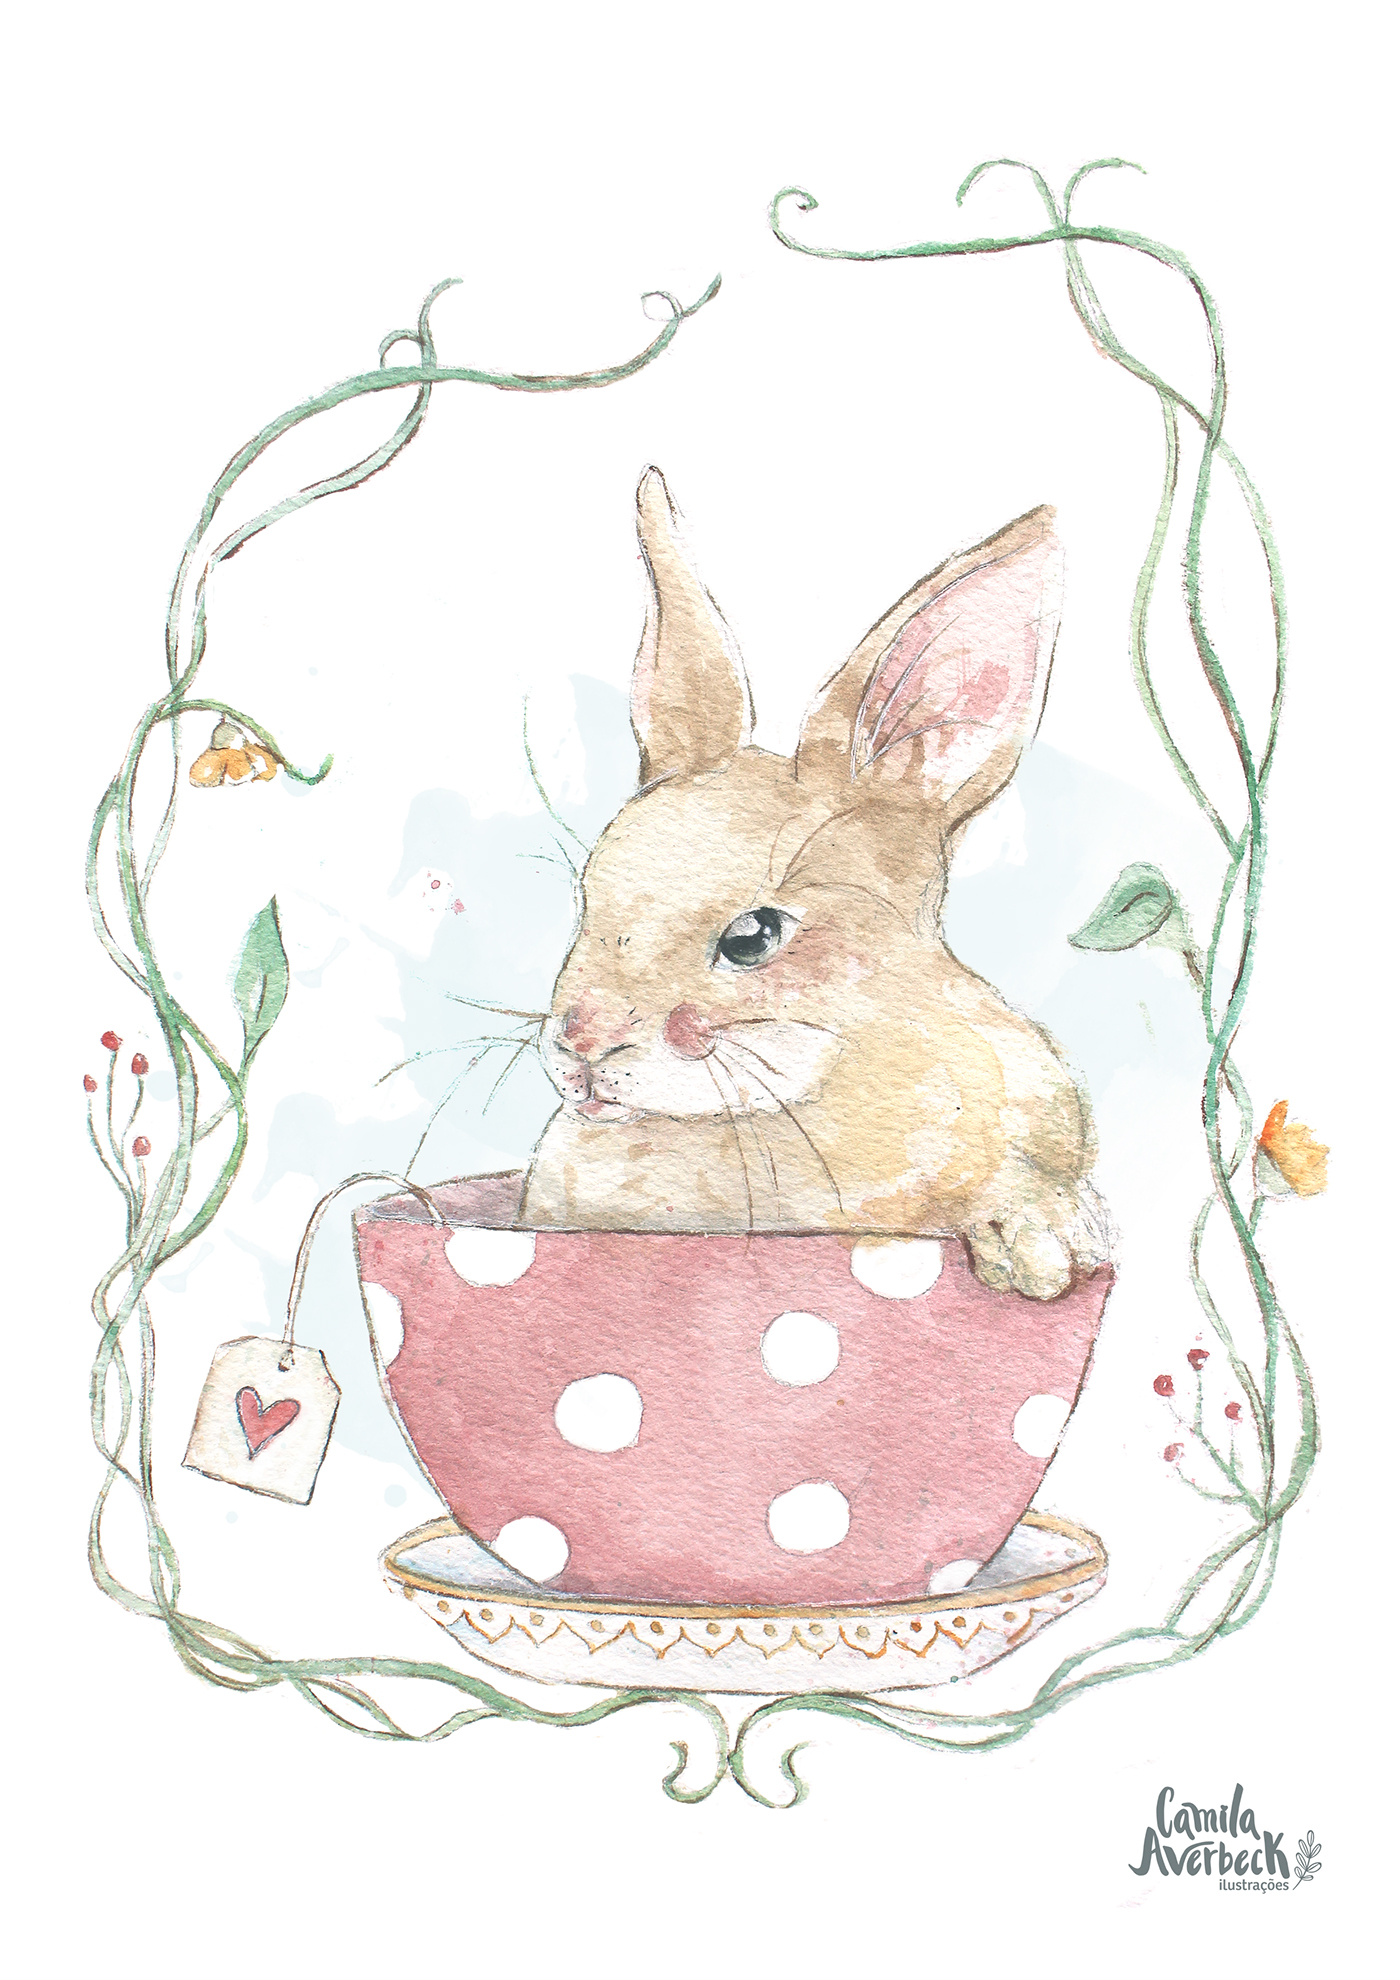 aquarela páscoa Easter coelho rabbit Ilustração arte desenho sweet animal